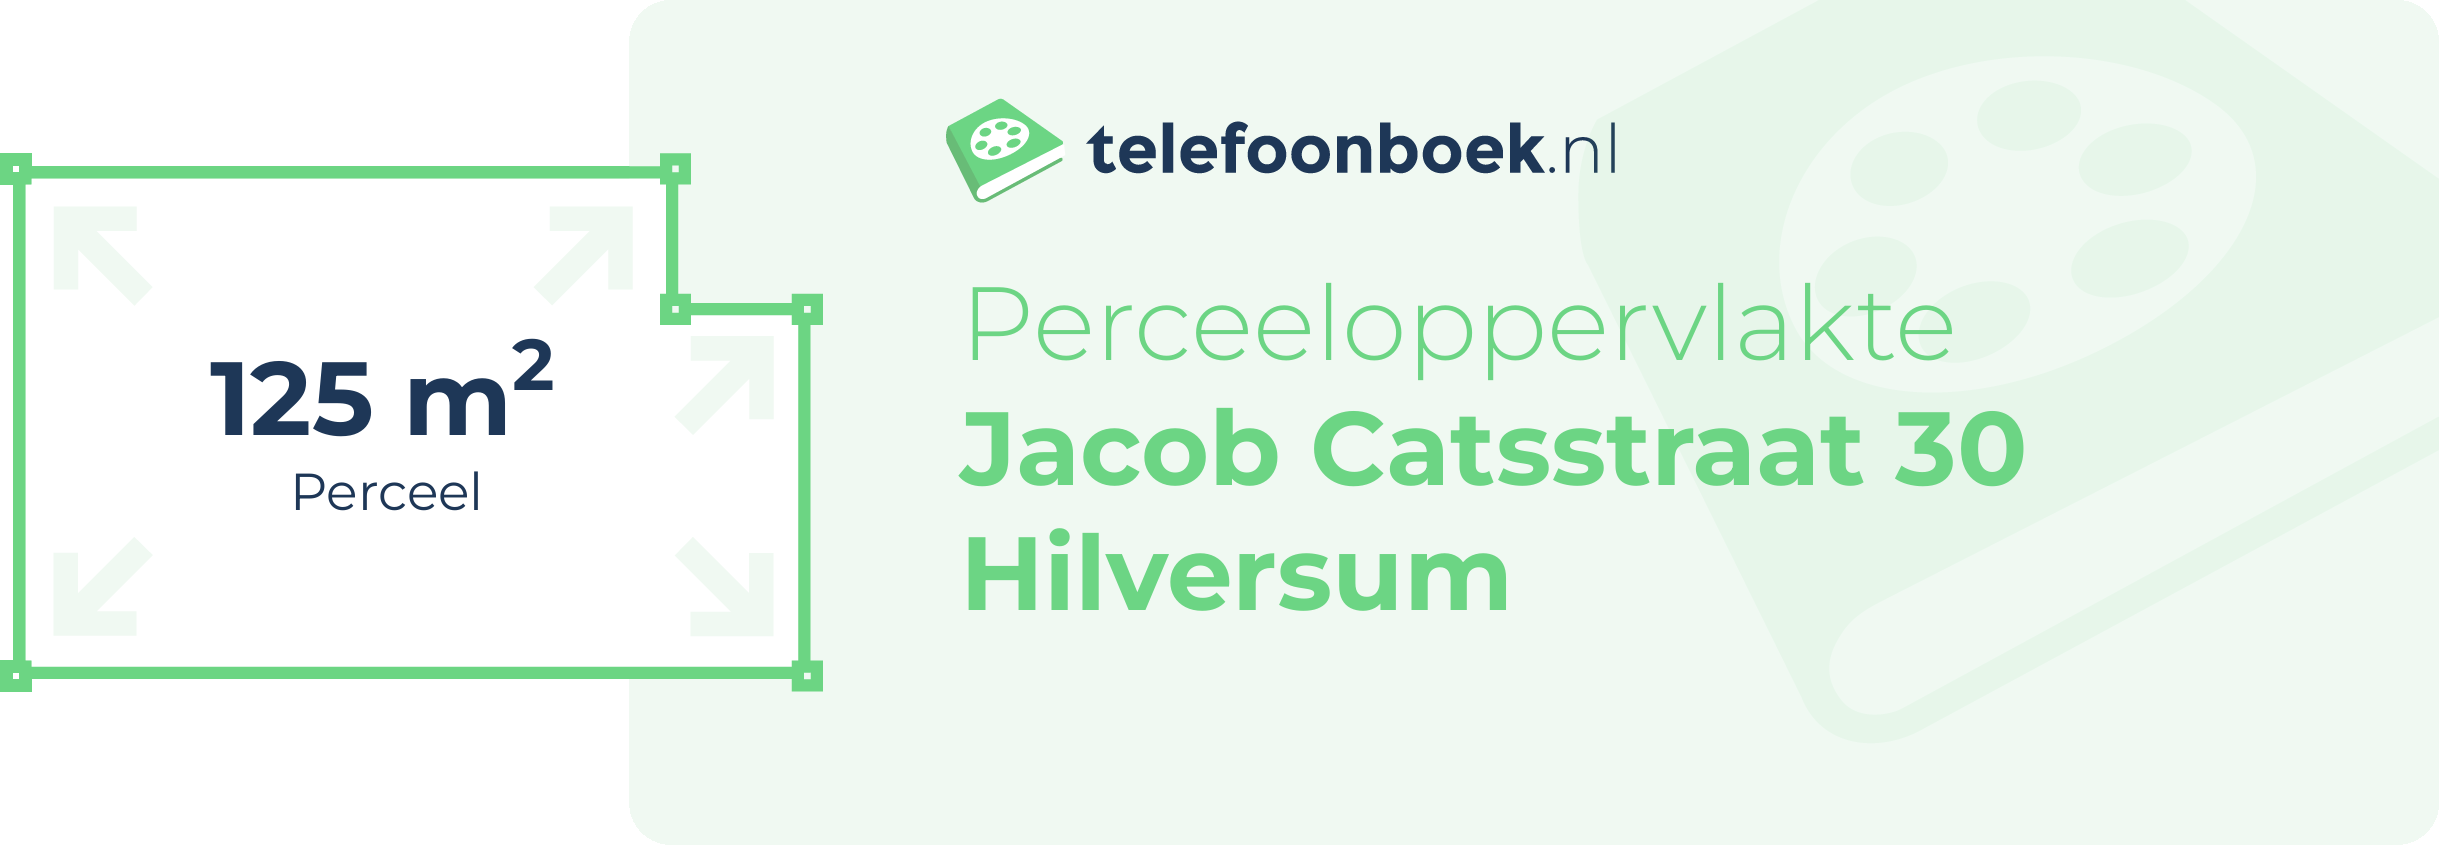 Perceeloppervlakte Jacob Catsstraat 30 Hilversum